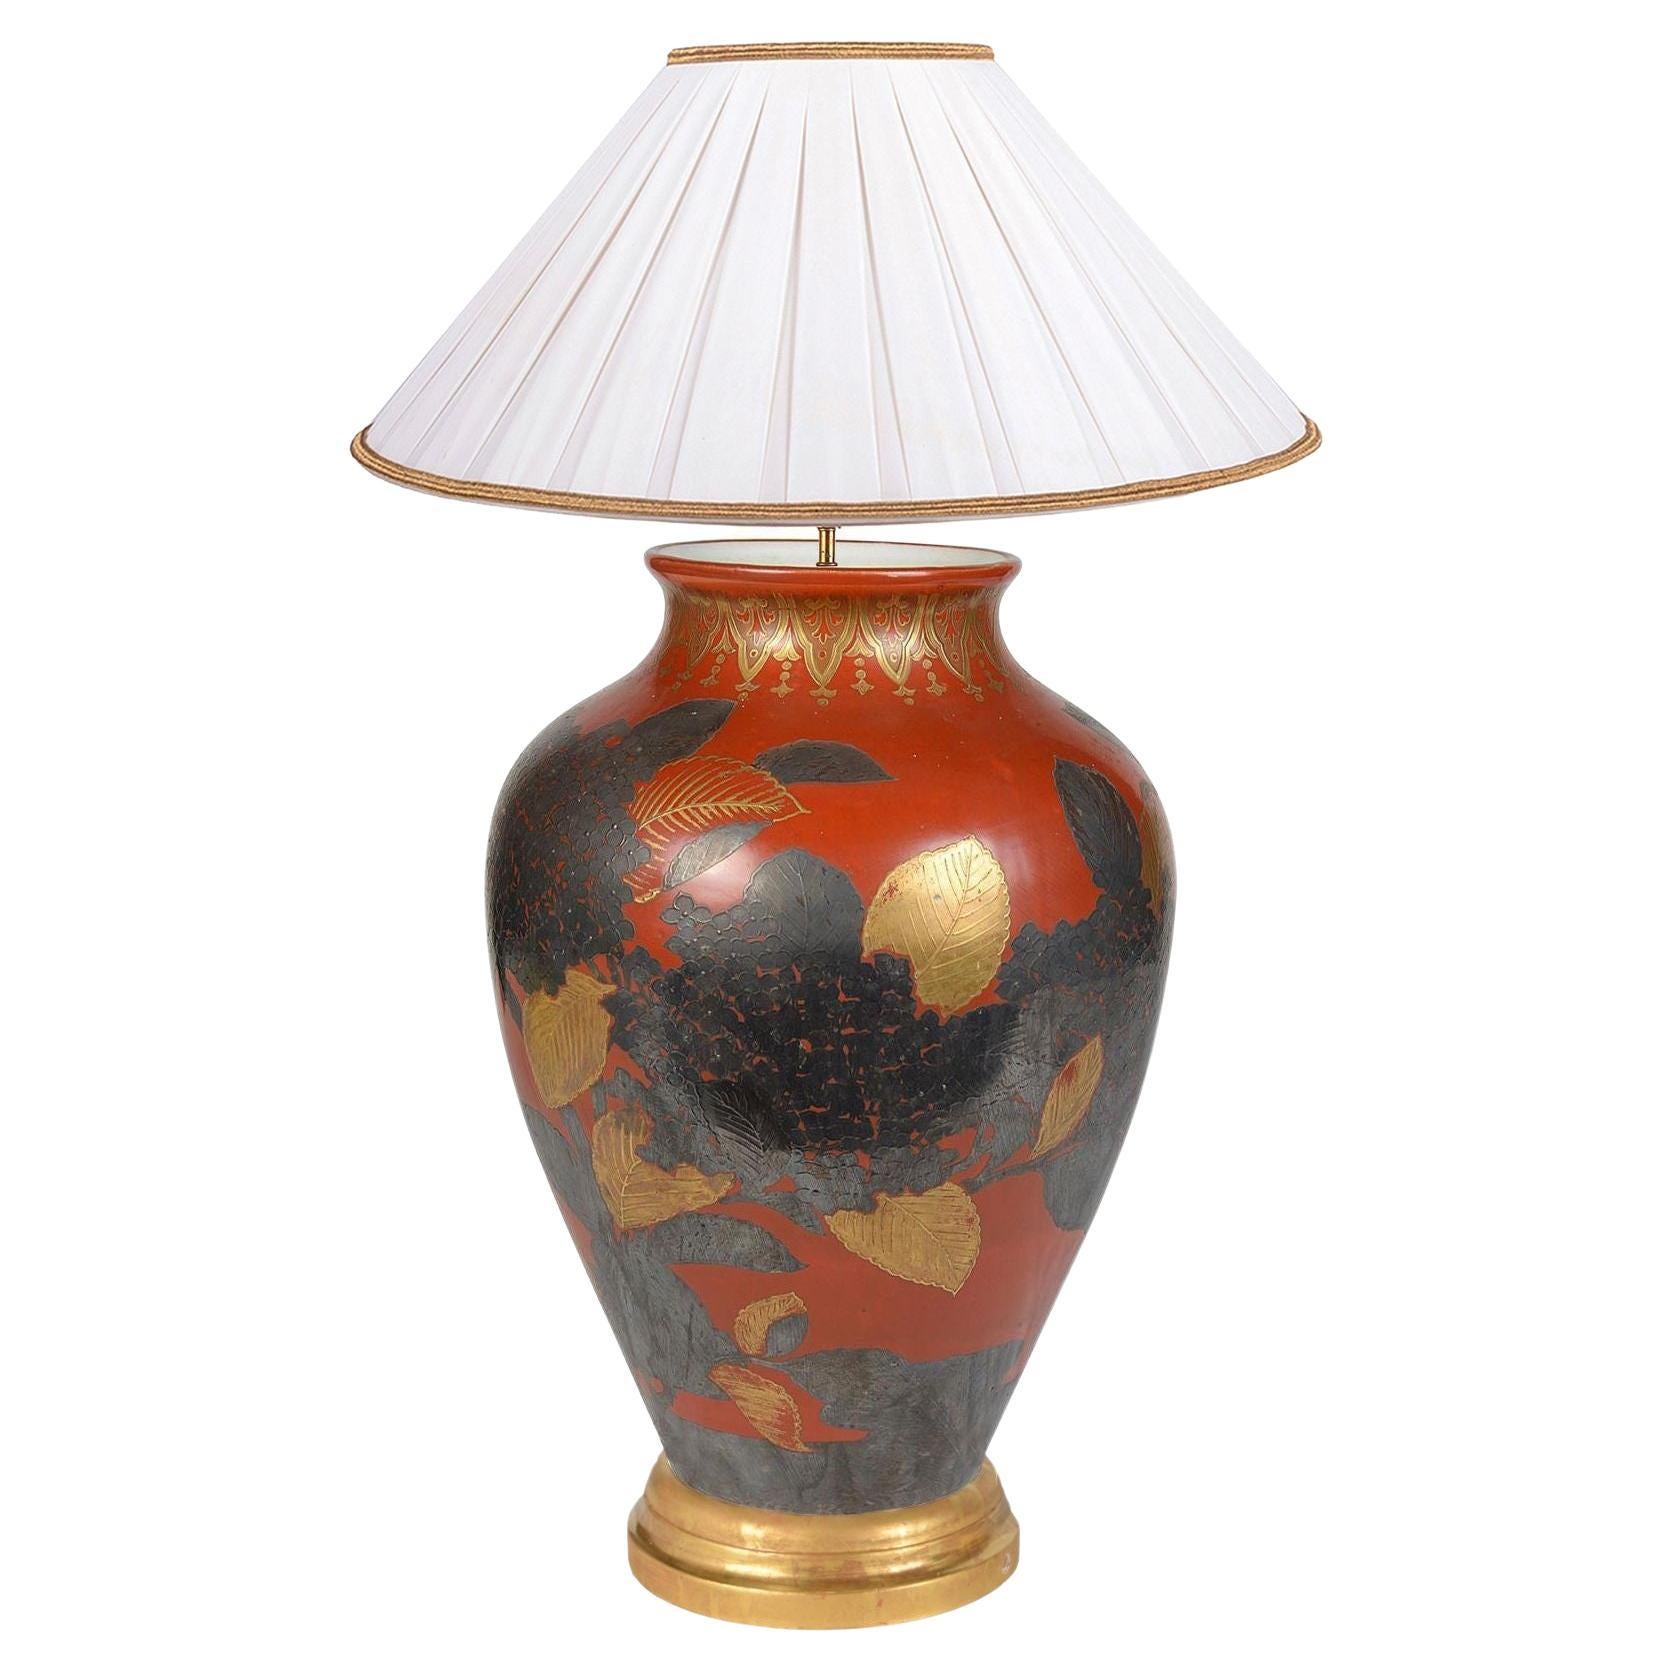 Meiji period Japanese vase / lamp, circa 1890